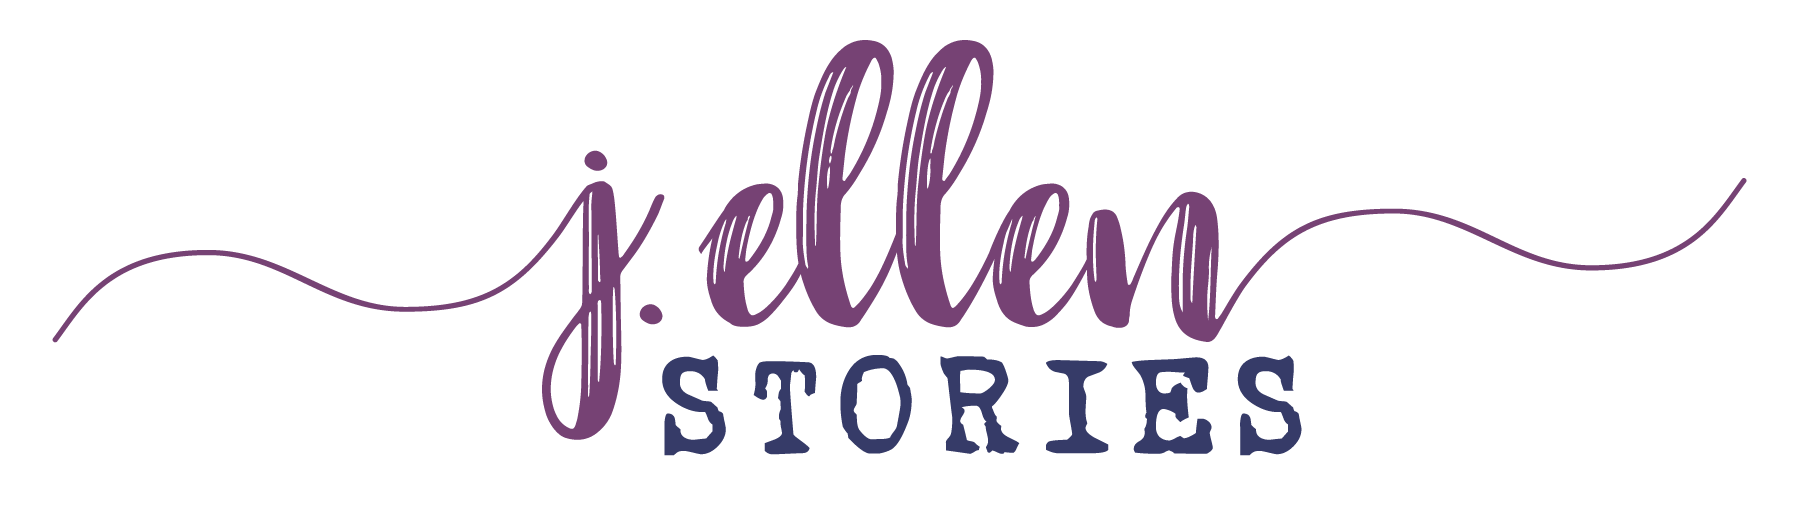 Stories by J. Ellen Daniels